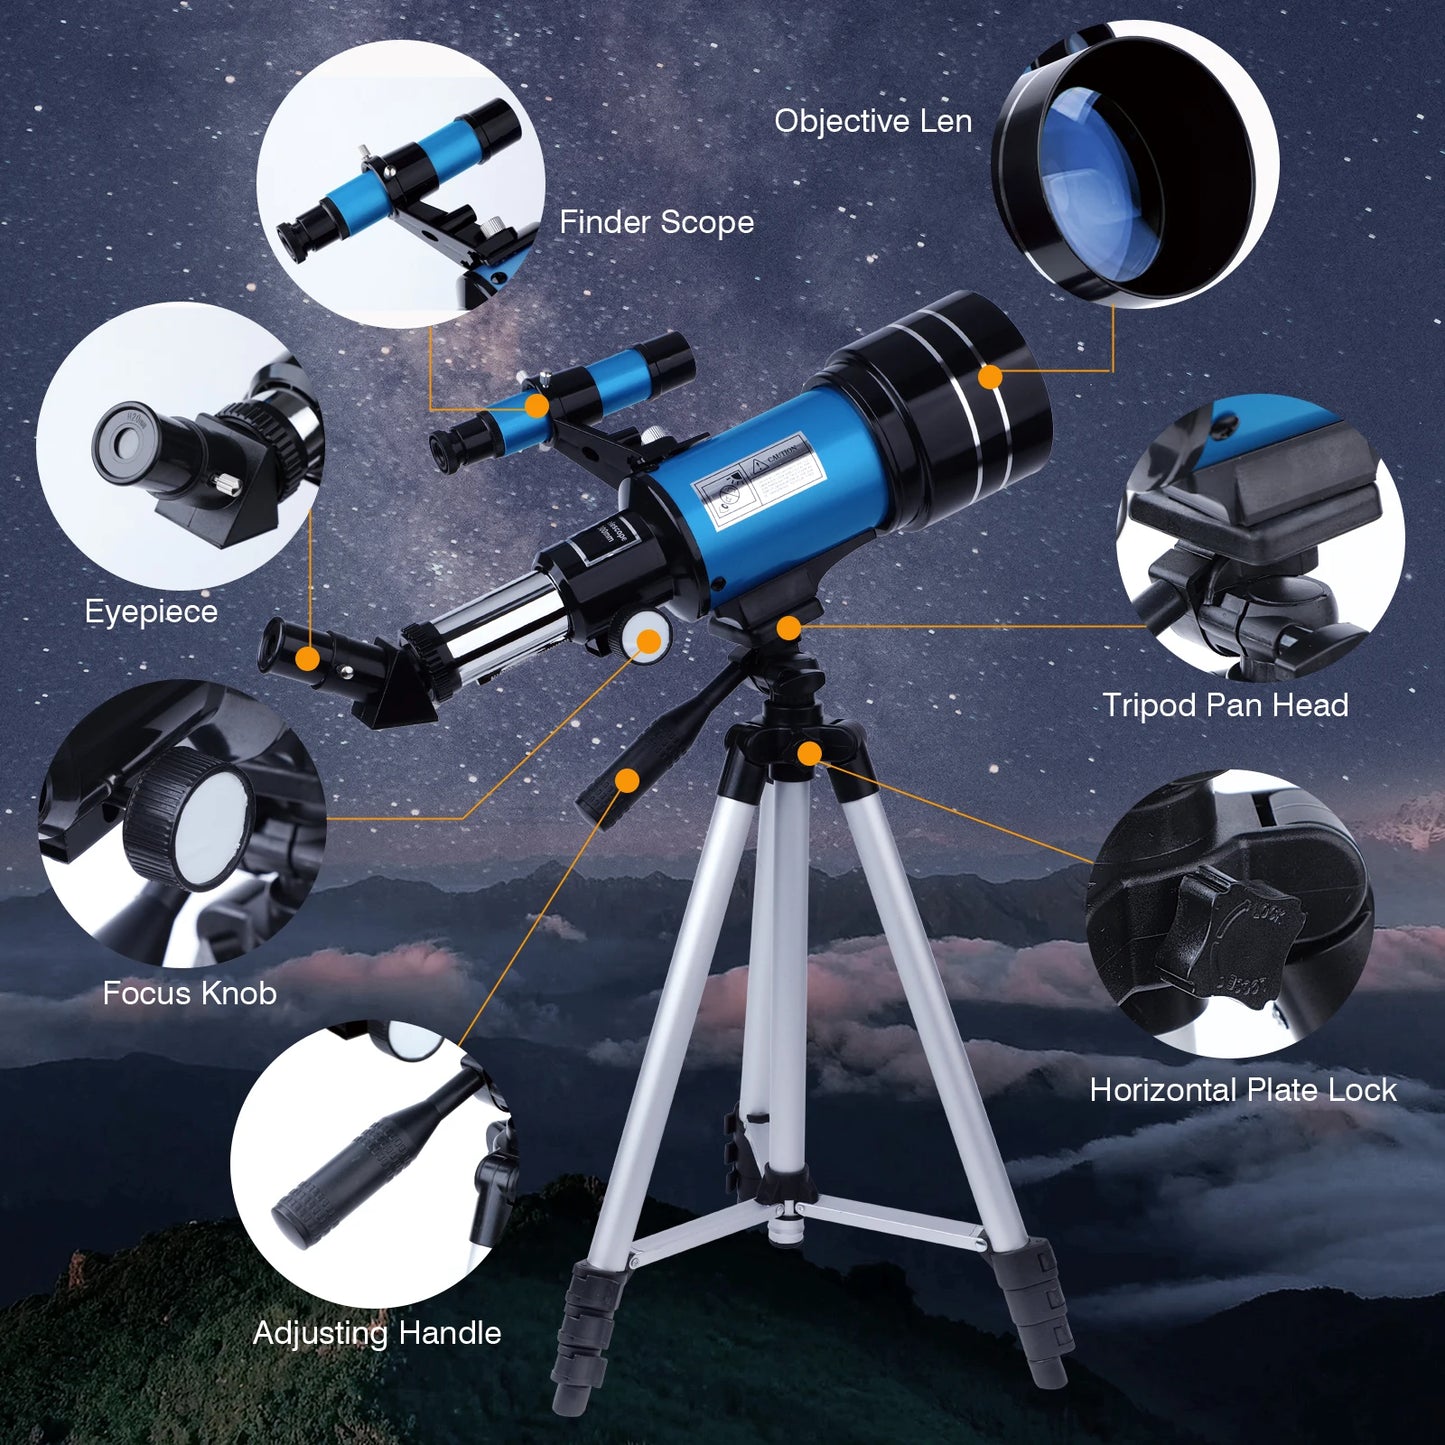 30070 Astronomical Telescope 150x Zoom  30070